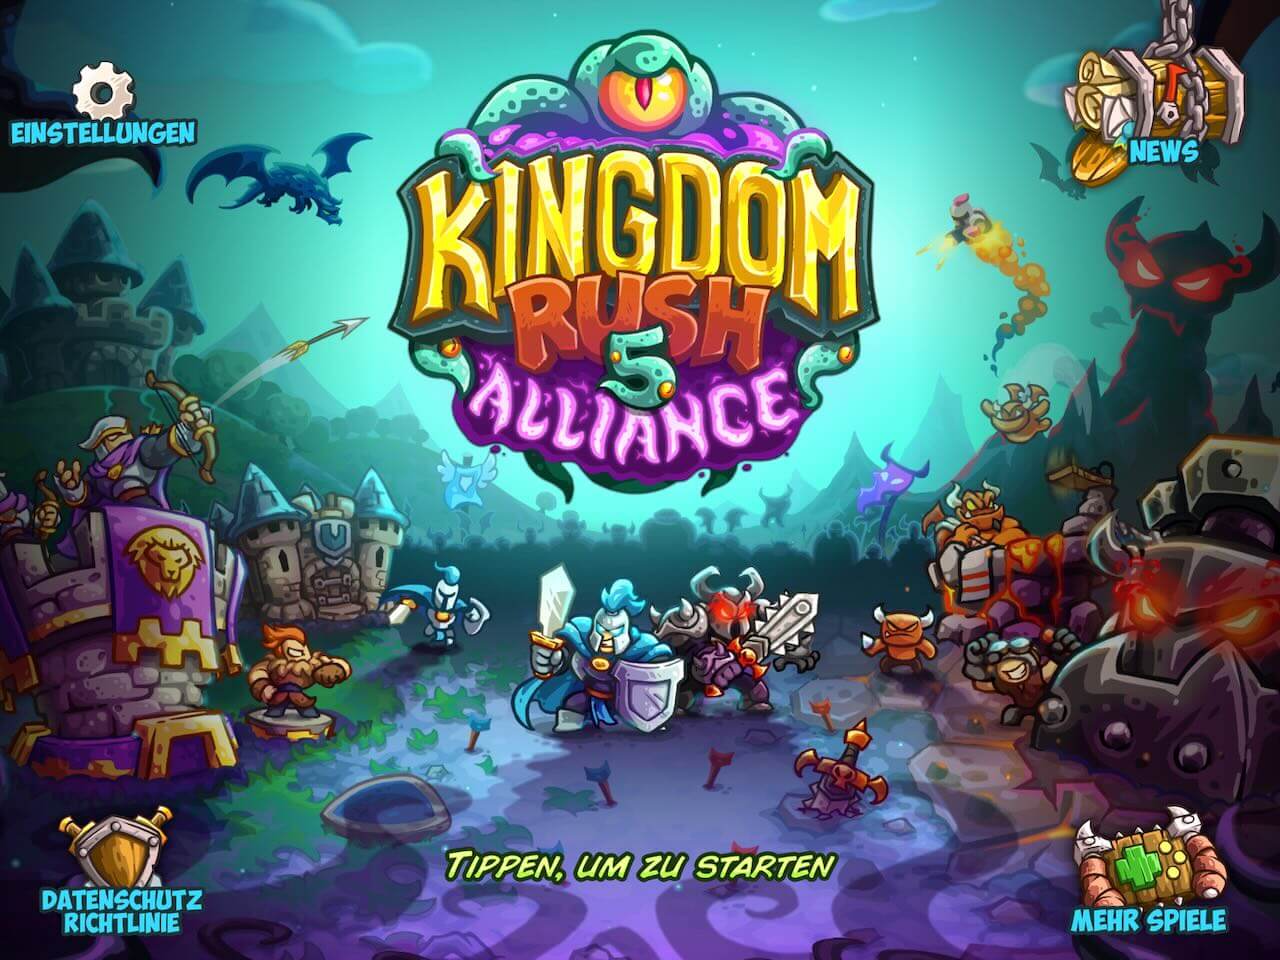 Kingdom-Rush-5-Alliance-Test-iOS-Tower-Defense-mit-ganz-vielen-Upgrades